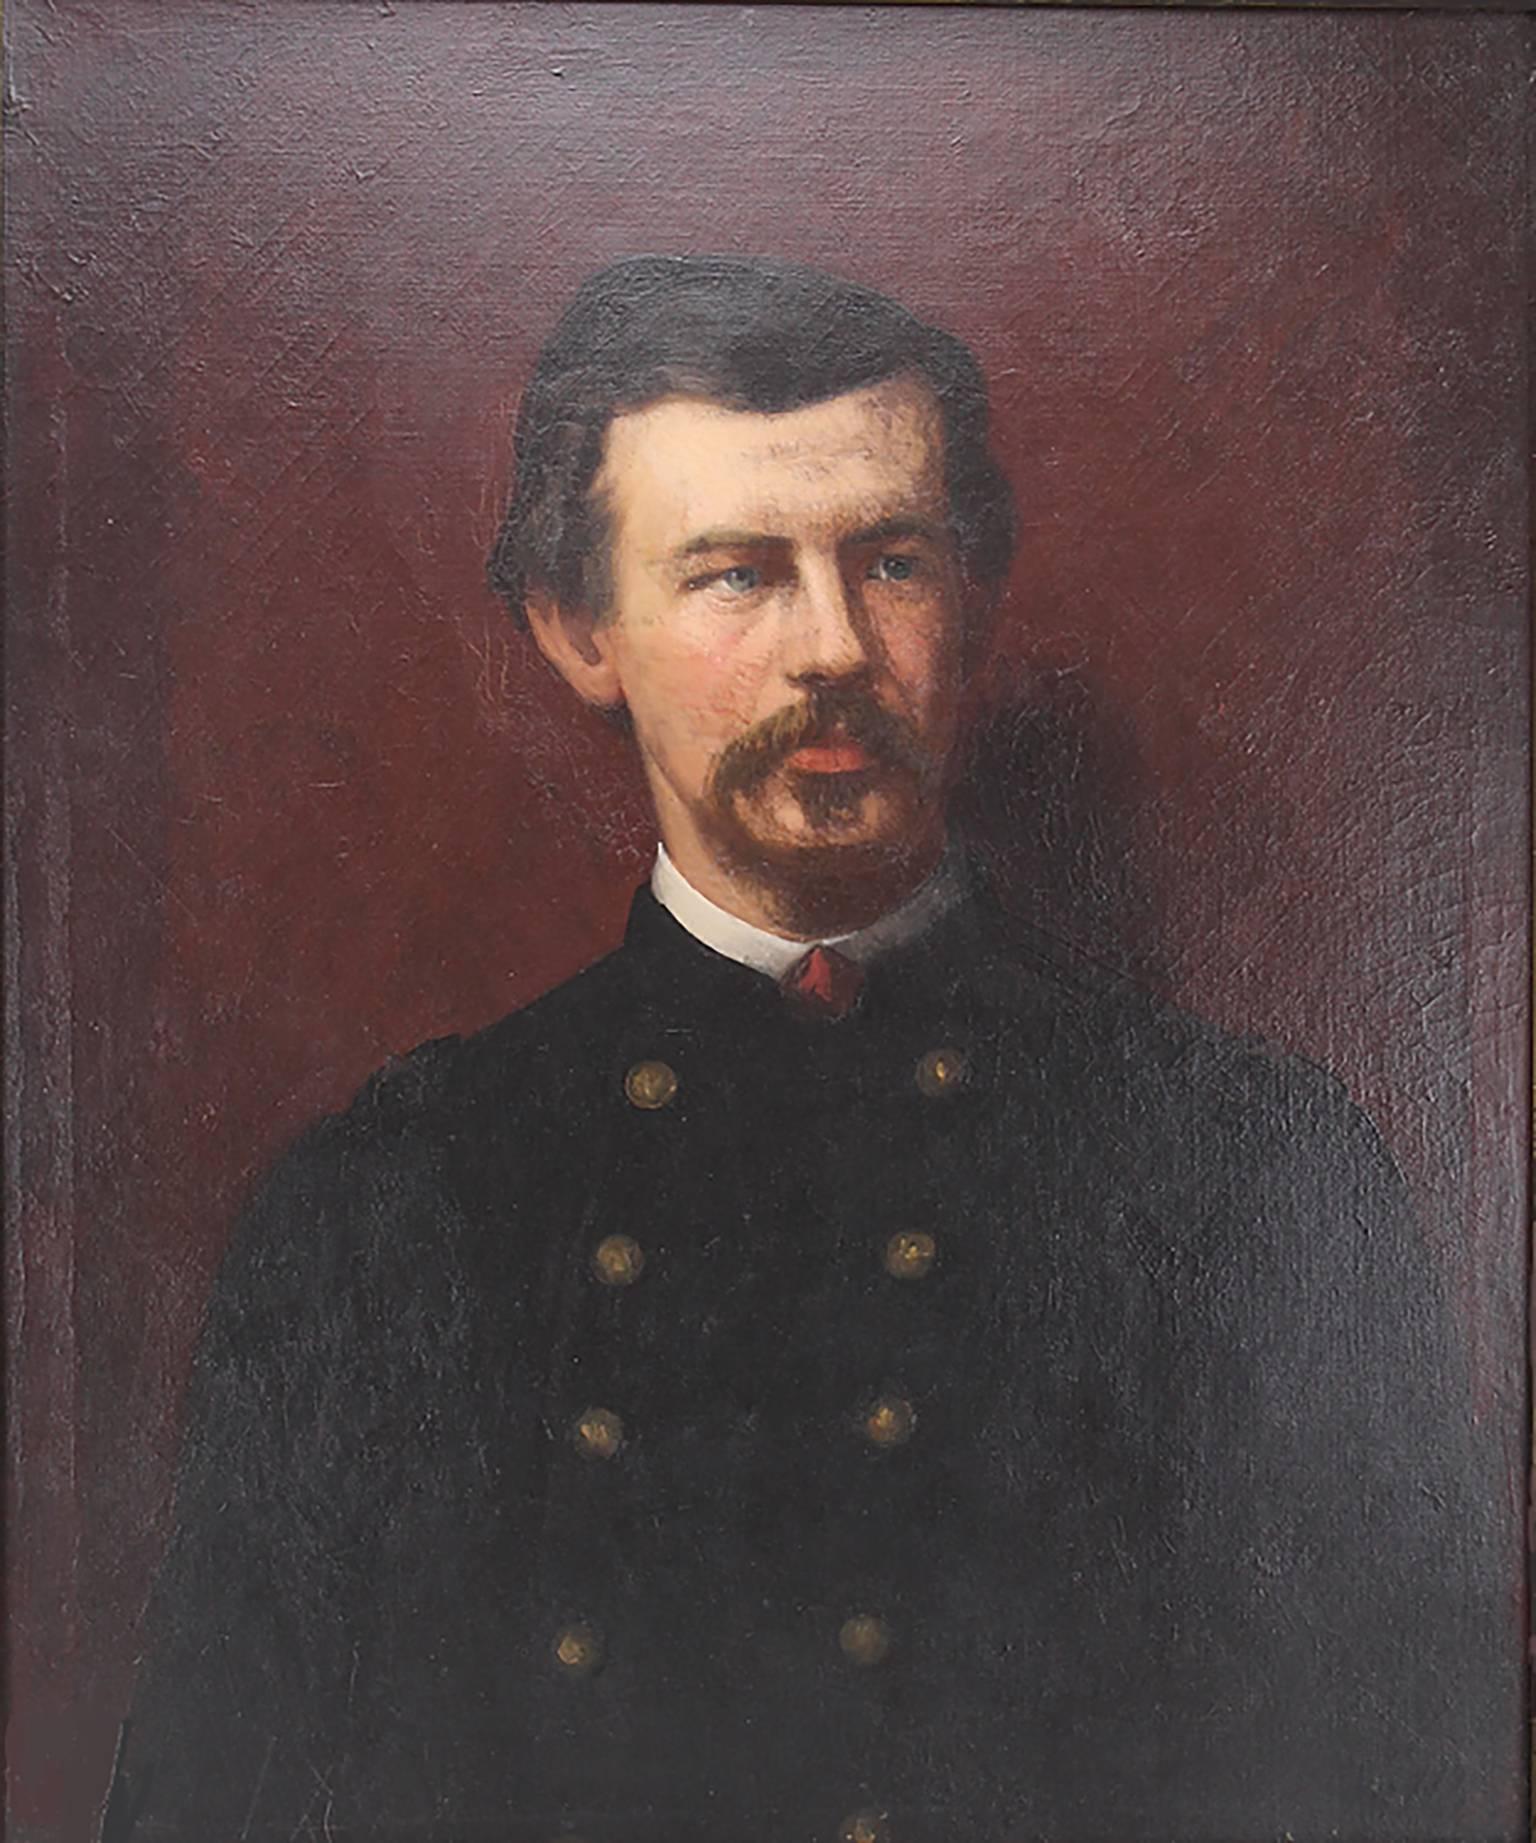 Das außergewöhnliche Porträt des Bürgerkriegssoldaten Robert Shaw aus dem 19. Jahrhundert von Eastman Johnso – Painting von Eastman Johnson